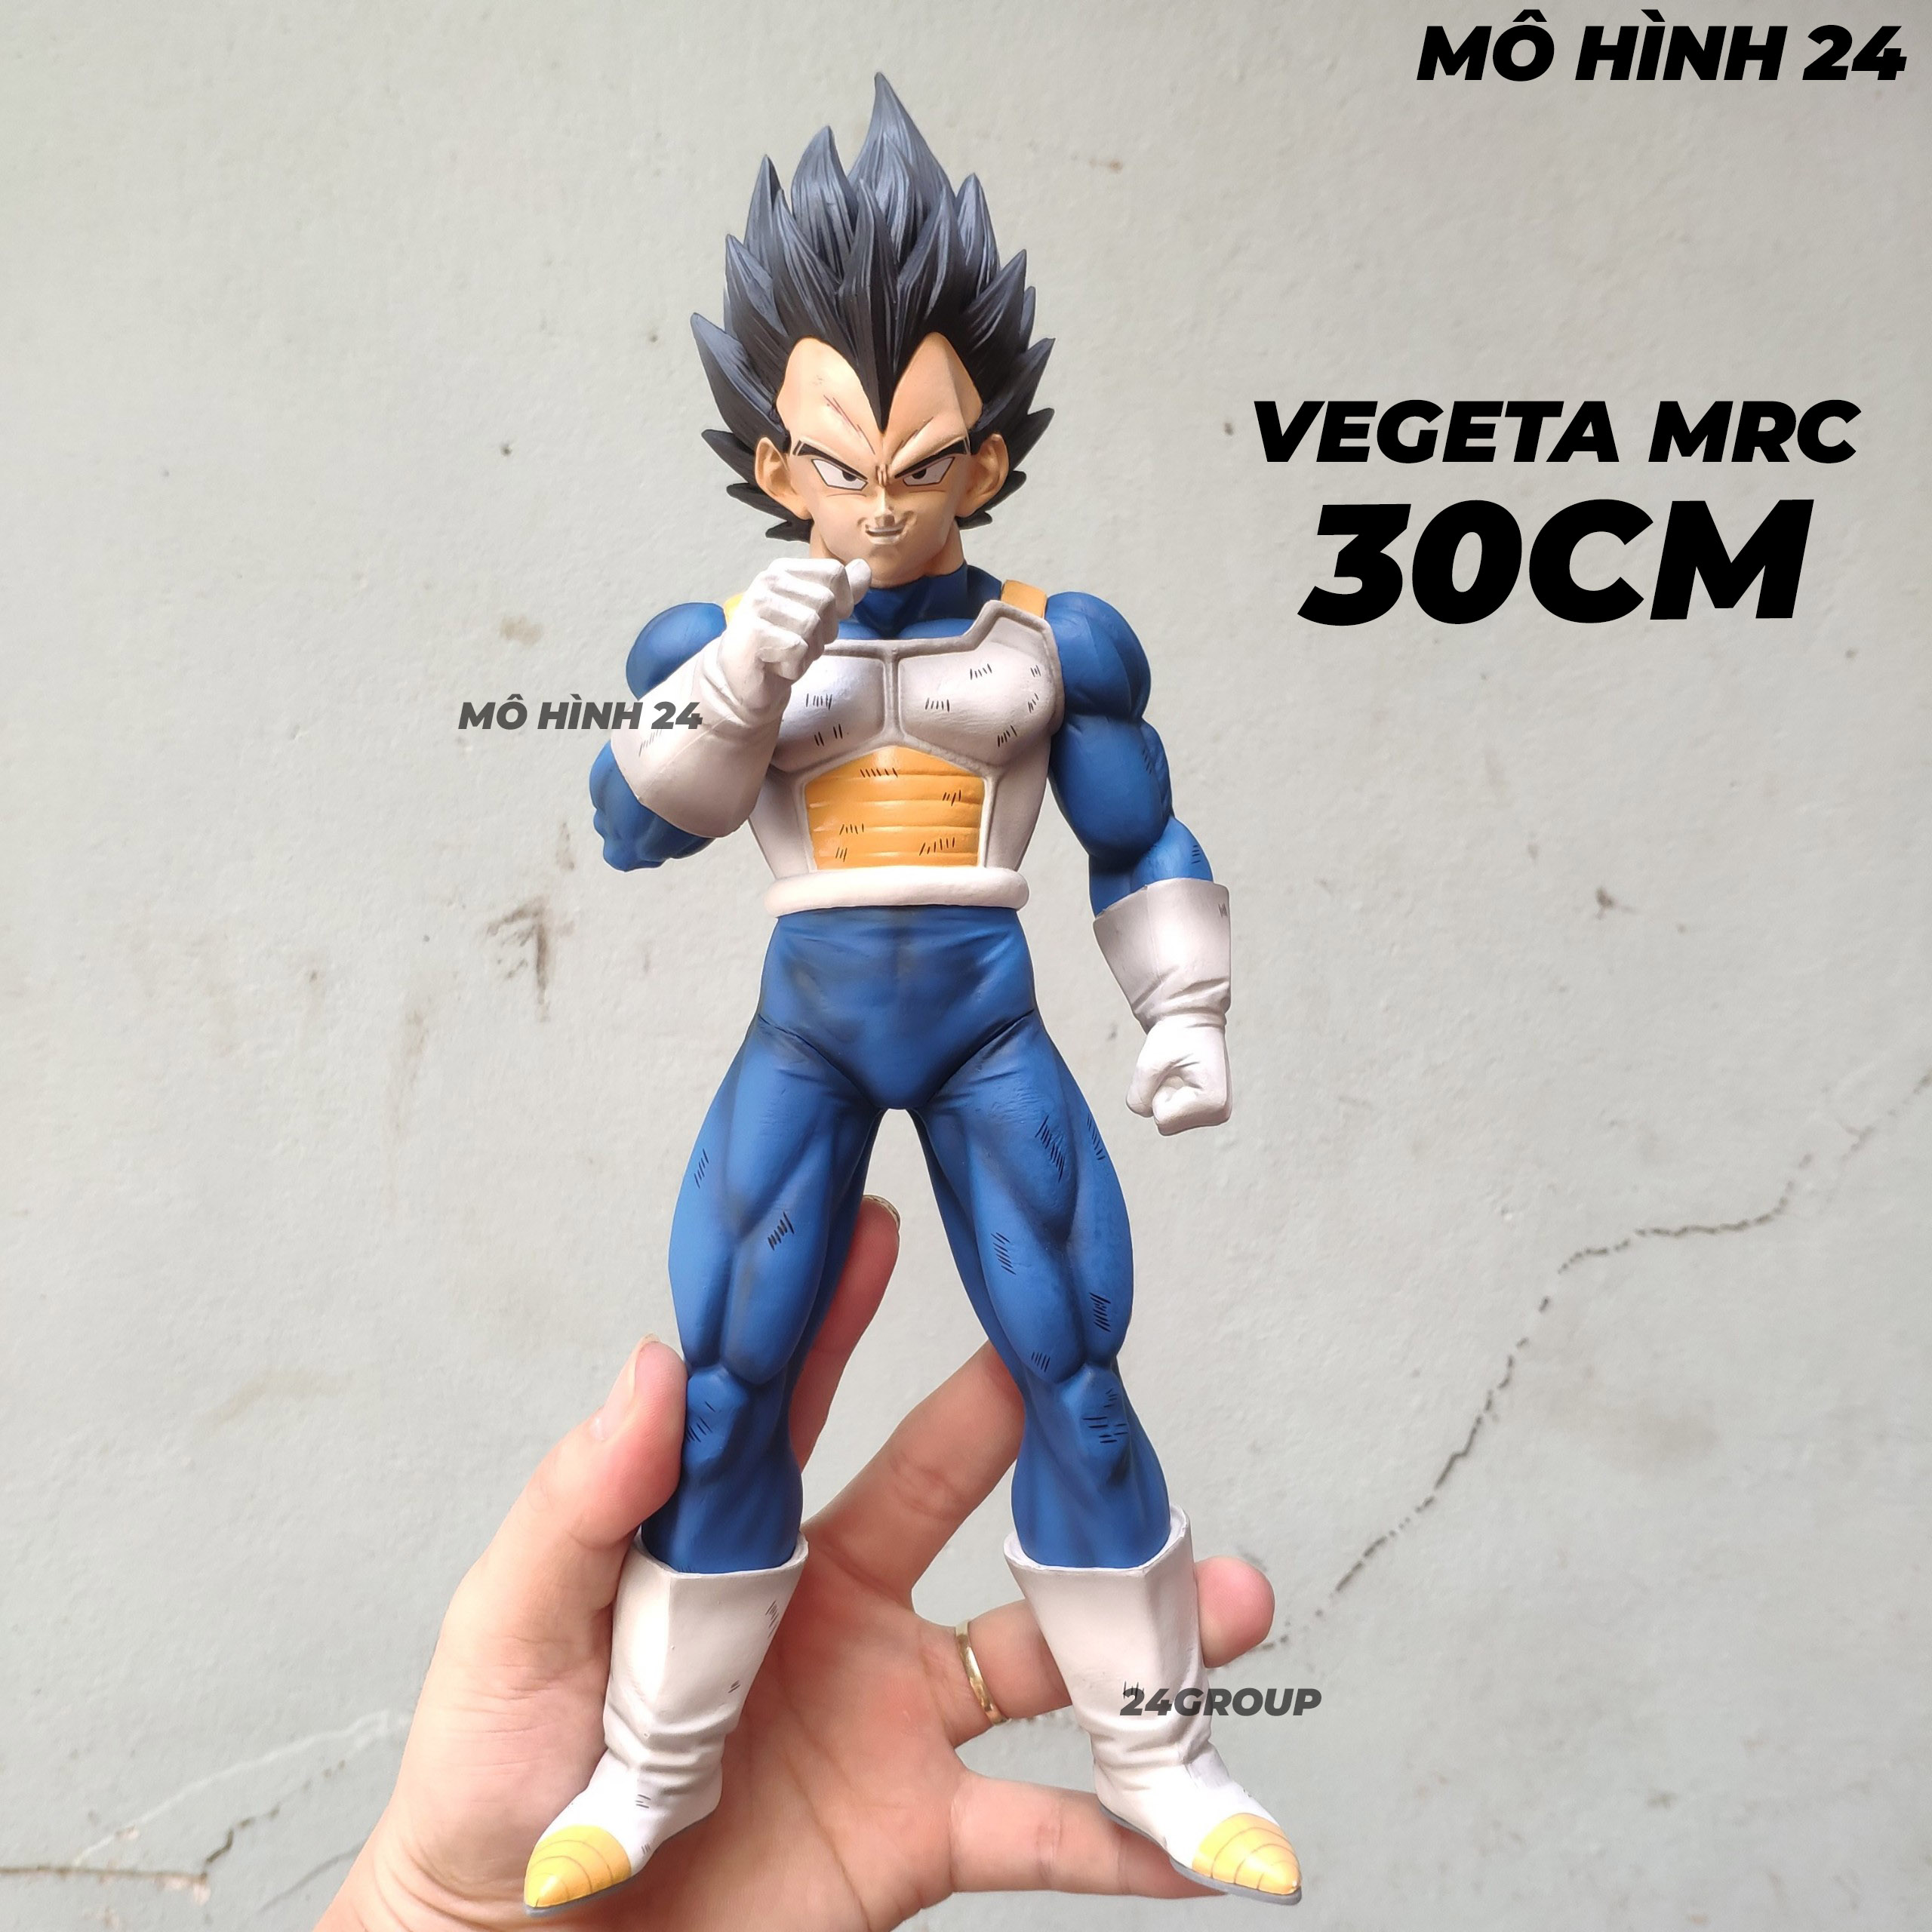 Mua Mô Hình Vegeta Dragon Ball  Cao 18 Cm tại Nino24